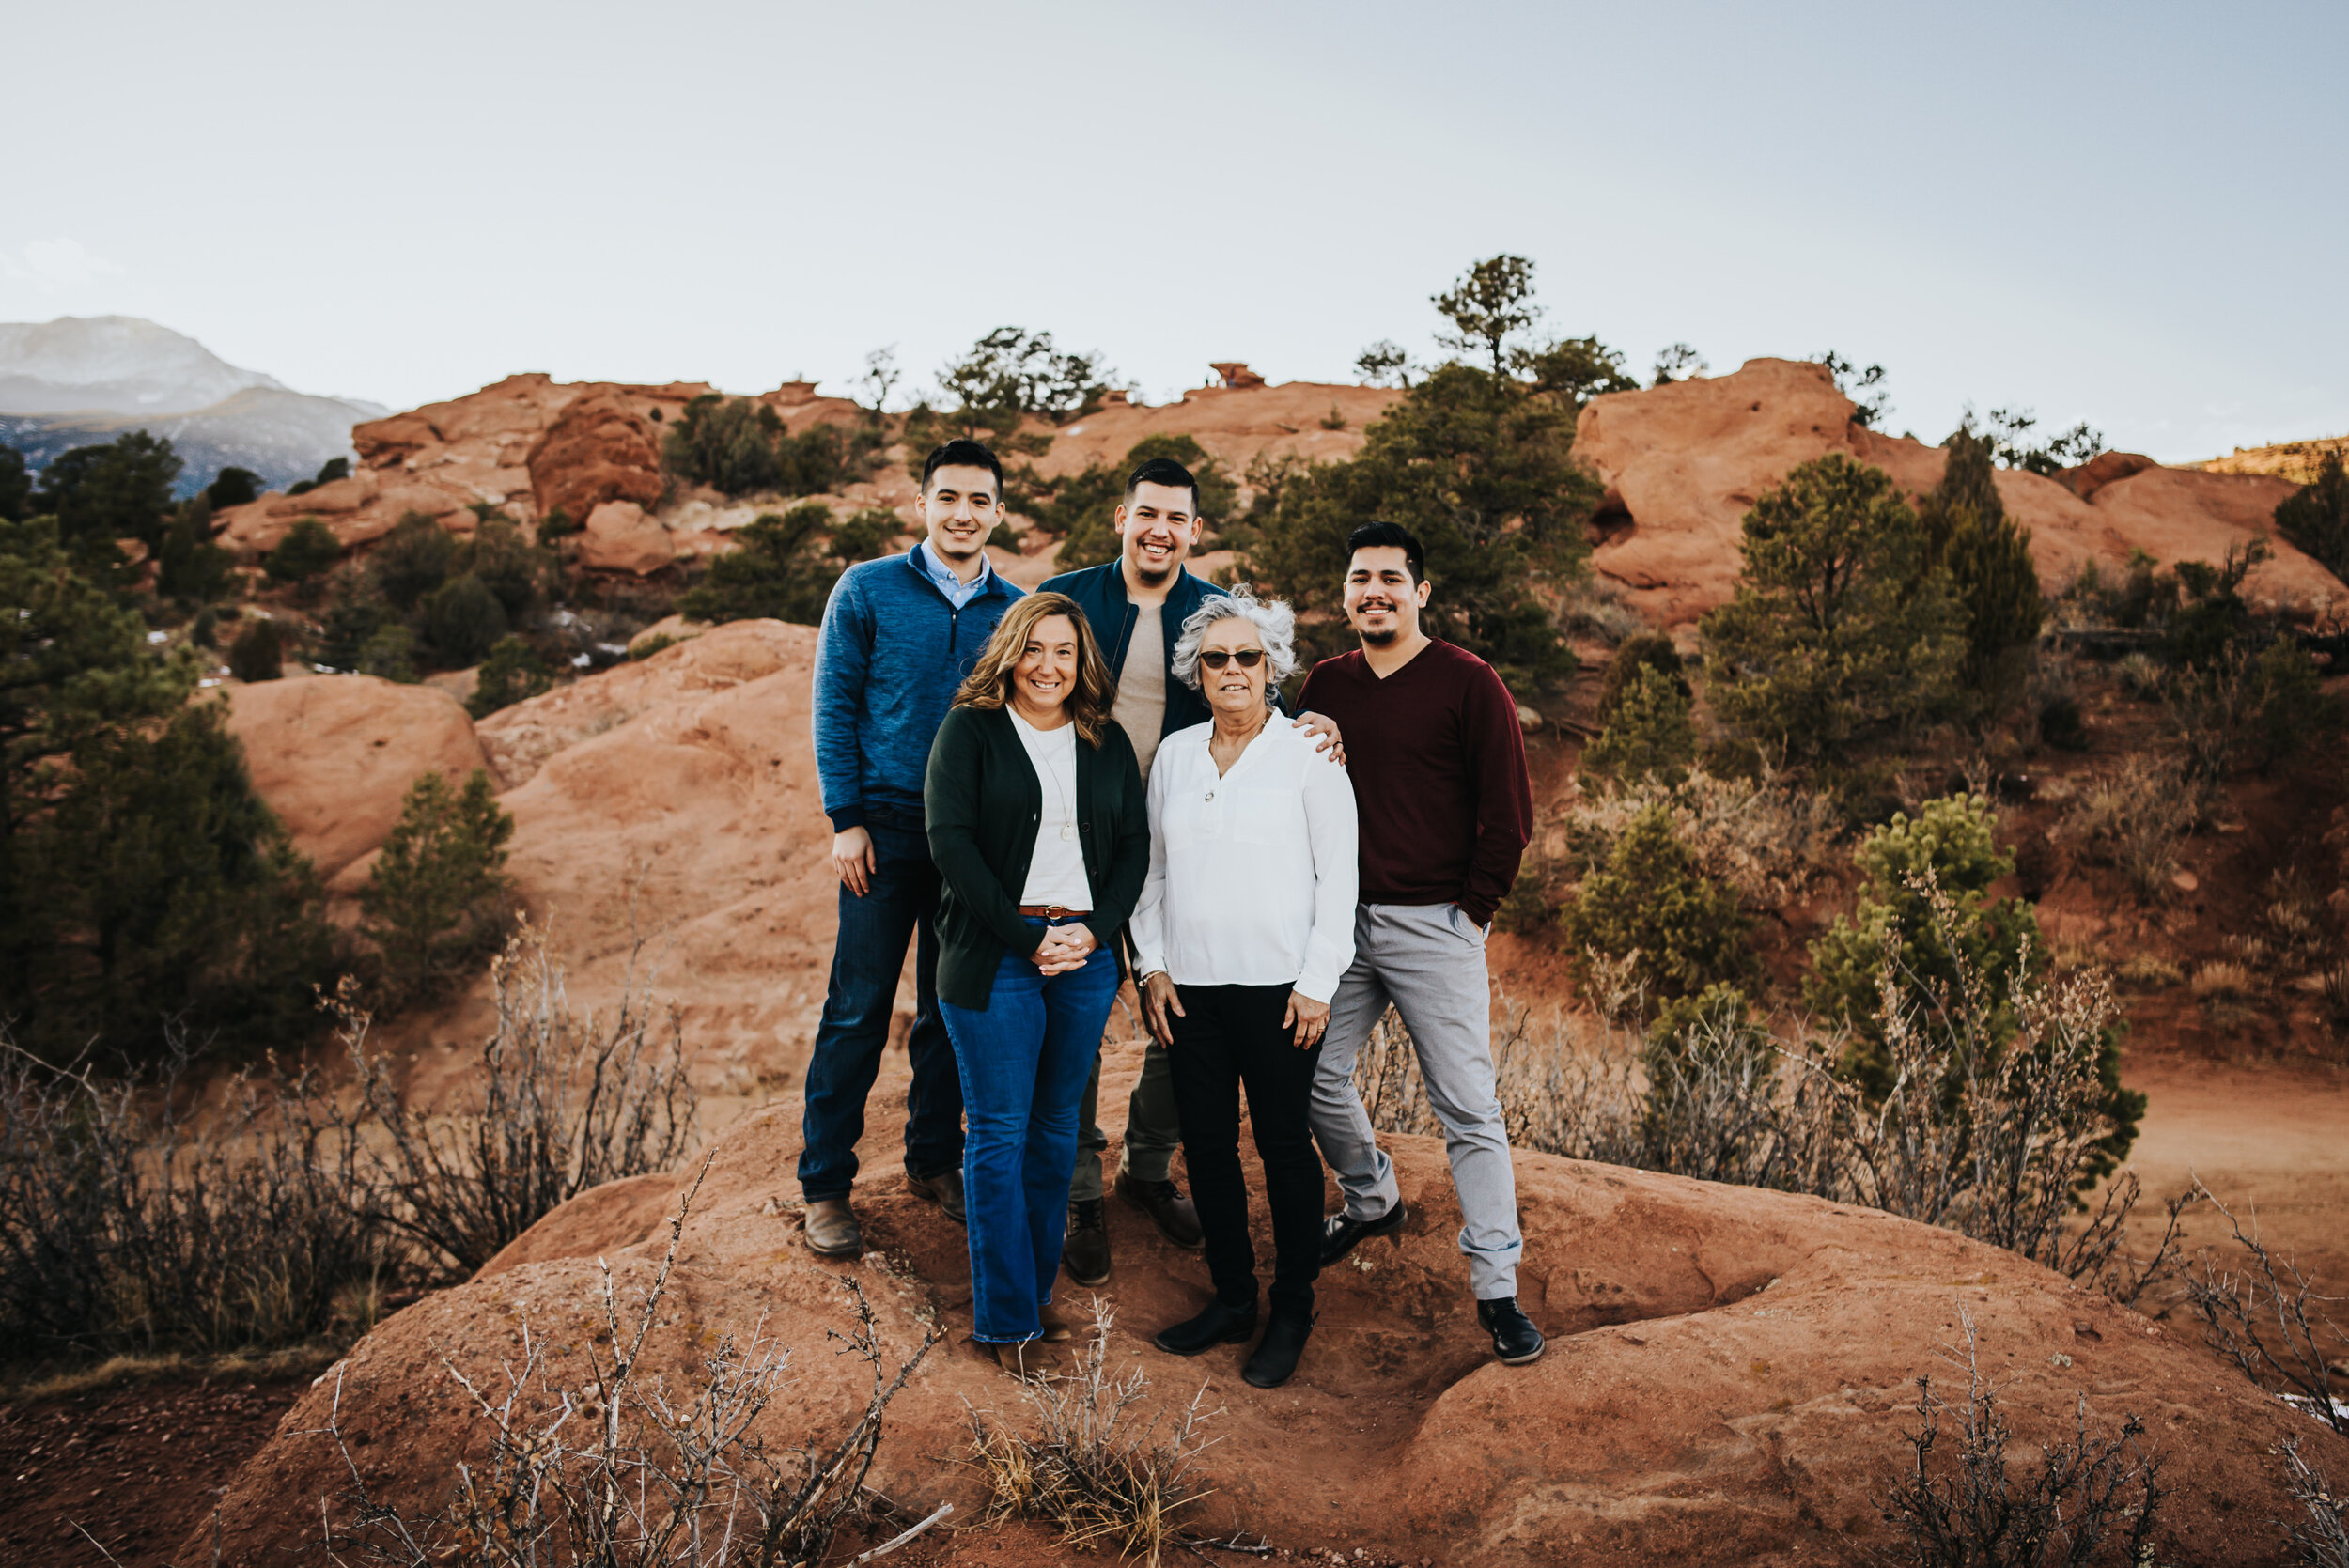 Steven Extended Family Session Colorado Springs Sunset Garden of the Gods Wild Prairie Photography-1-2021.jpg